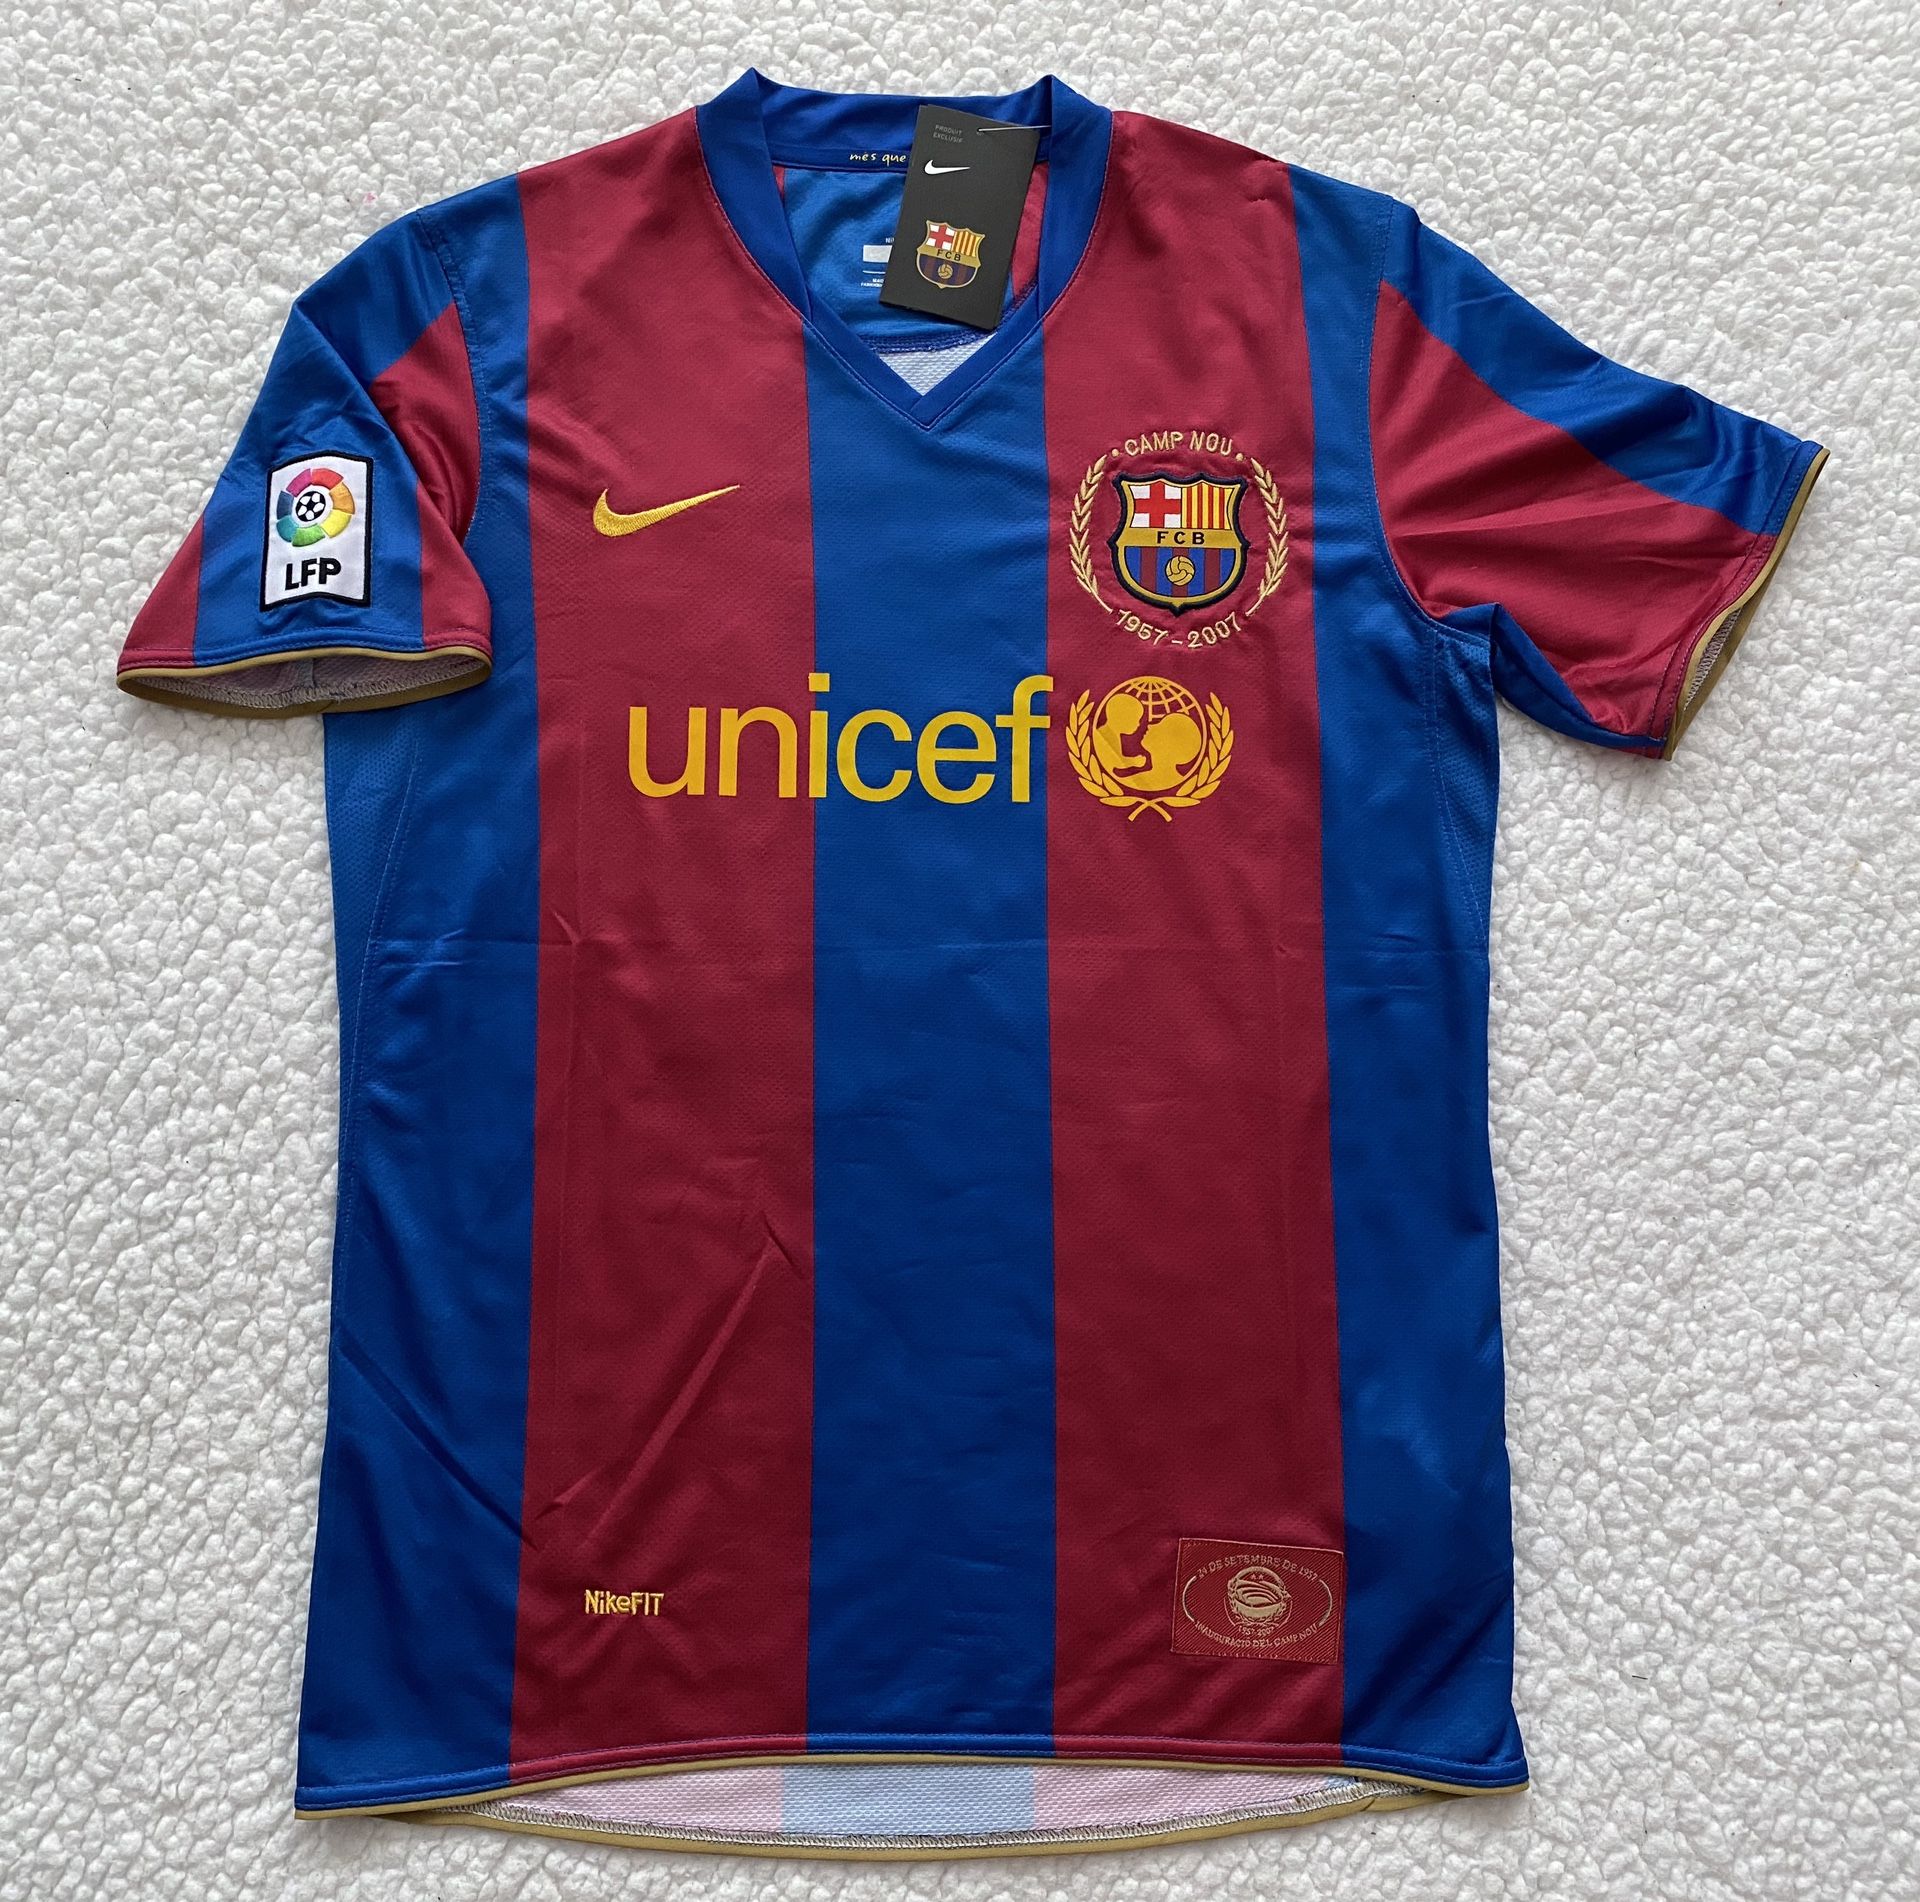 Ronaldinho FC Barcelona Soccer Jersey - Brand New - Men’s - Nike 2007 / 2008 Retro Vintage Home Soccer Jersey - Size M / L / XL